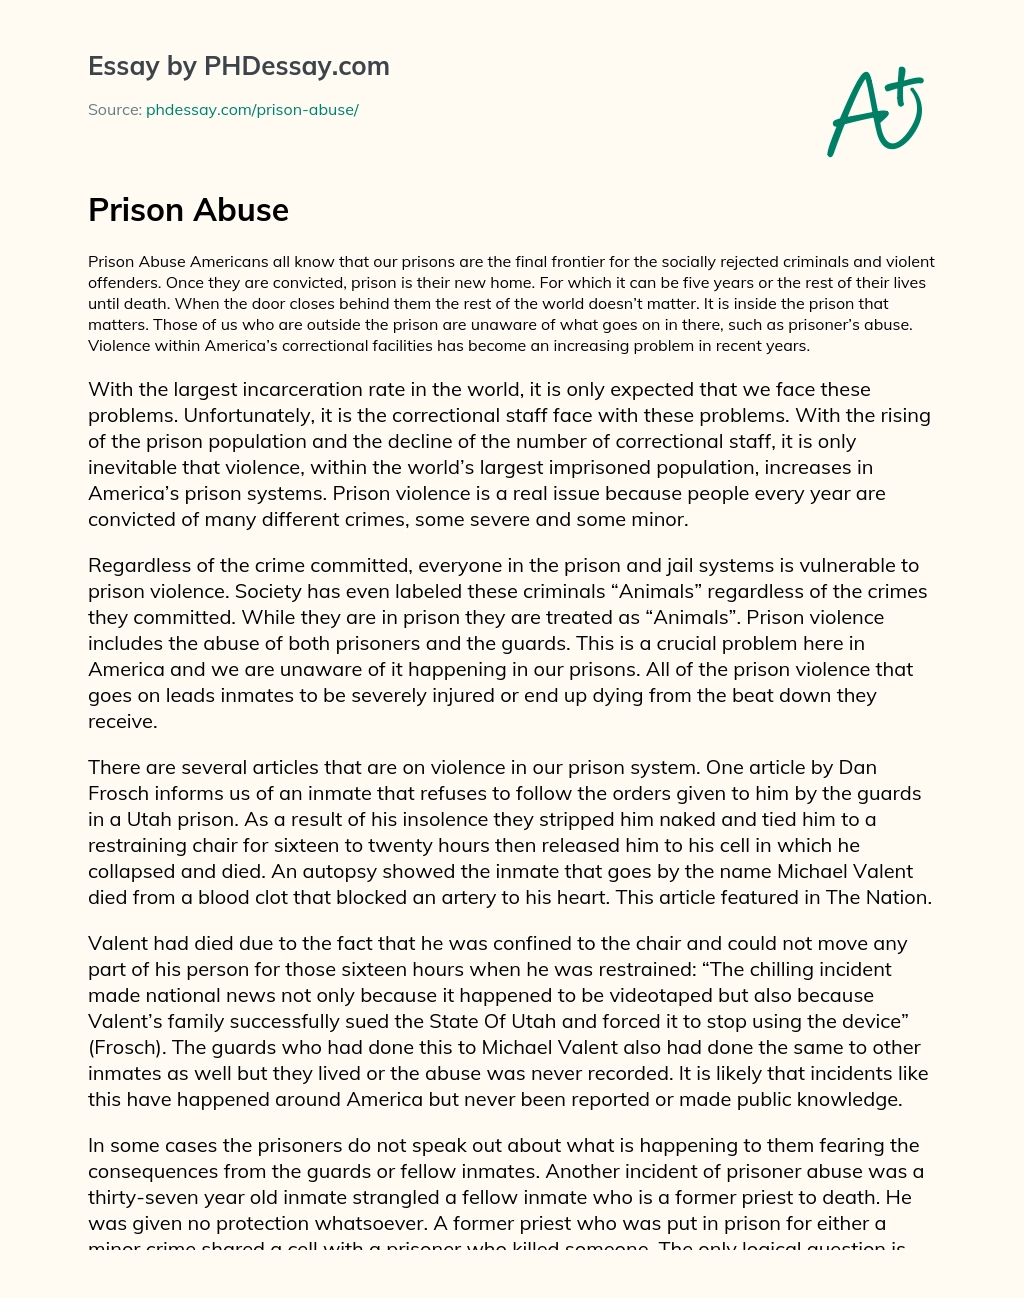 Prison Abuse essay